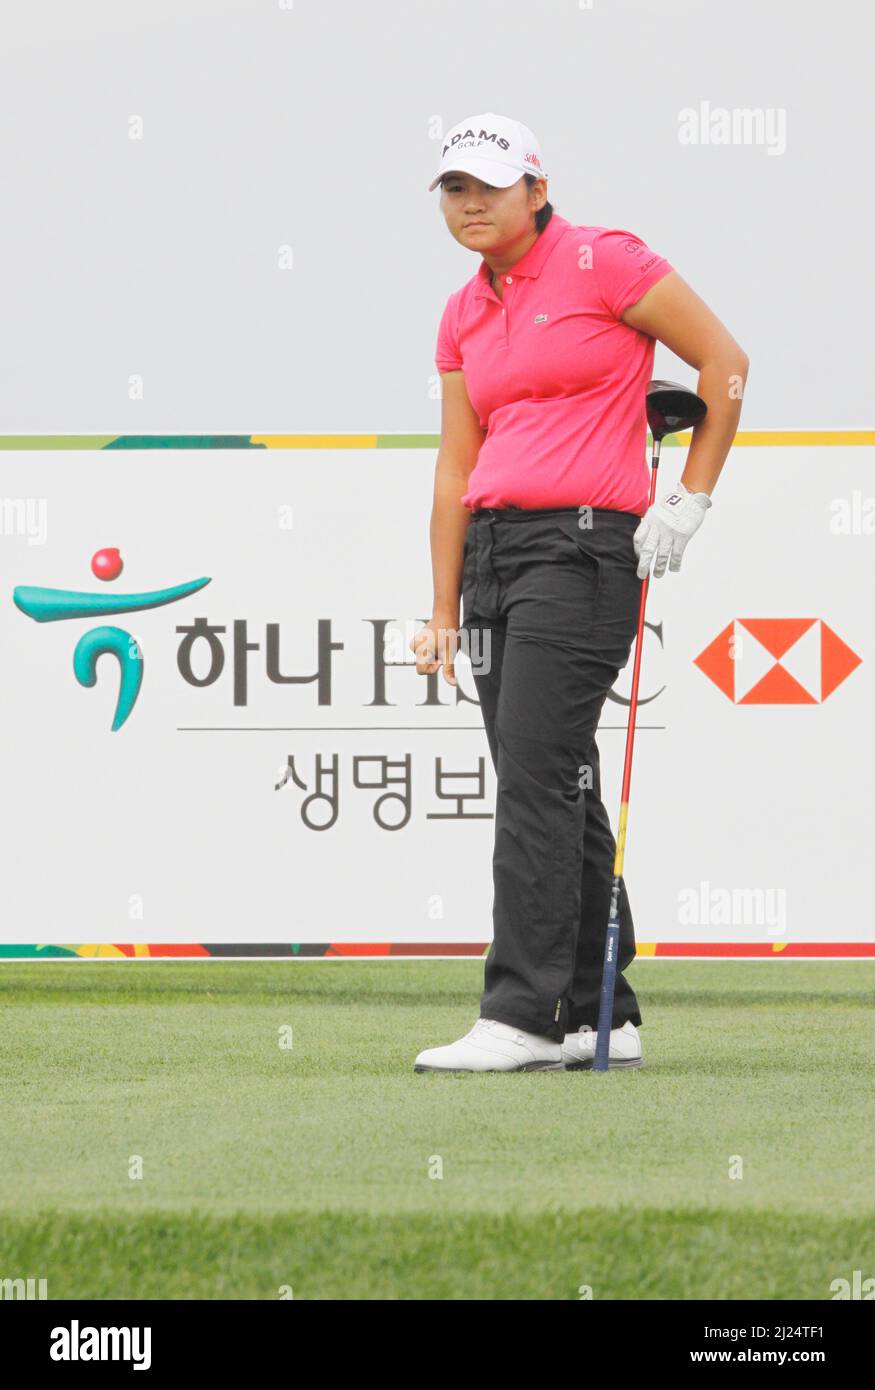 9 oct 2011-Incheon, Corée du Sud-TSENG, Yani de Taiwan, joue en t-shirt SHES tiré sur le 6th trous lors de la finale du championnat LPGA par Hana Bank au club de golf SKY72 à Incheon le 9 oct 2011, Corée du Sud. Banque D'Images